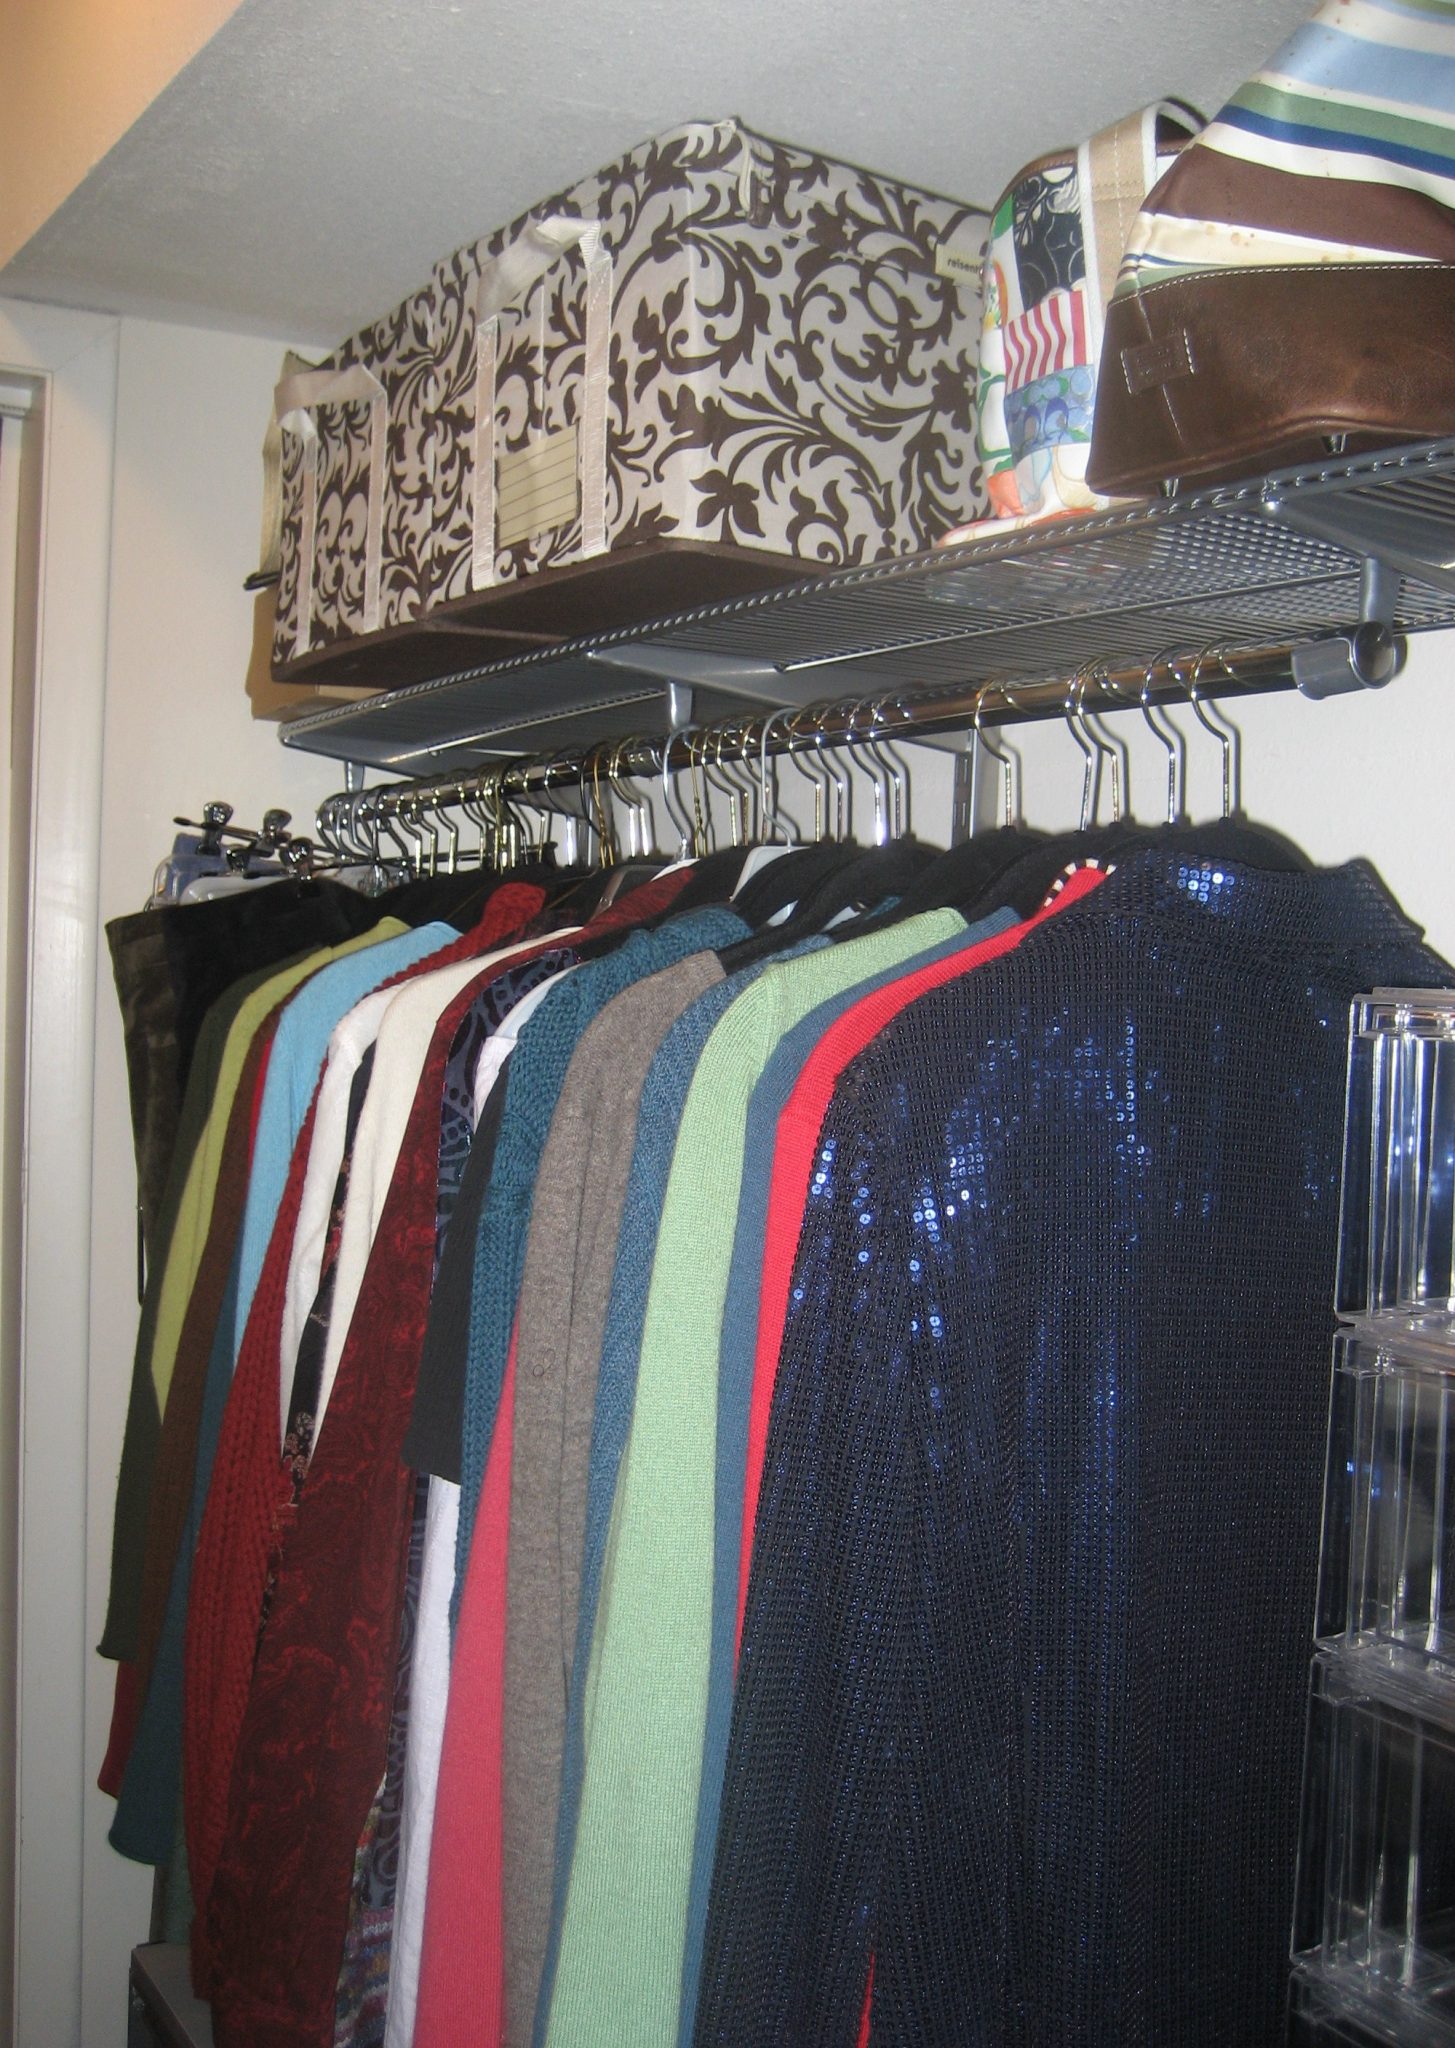 A closet designed for your wardrobe means a closet designed to